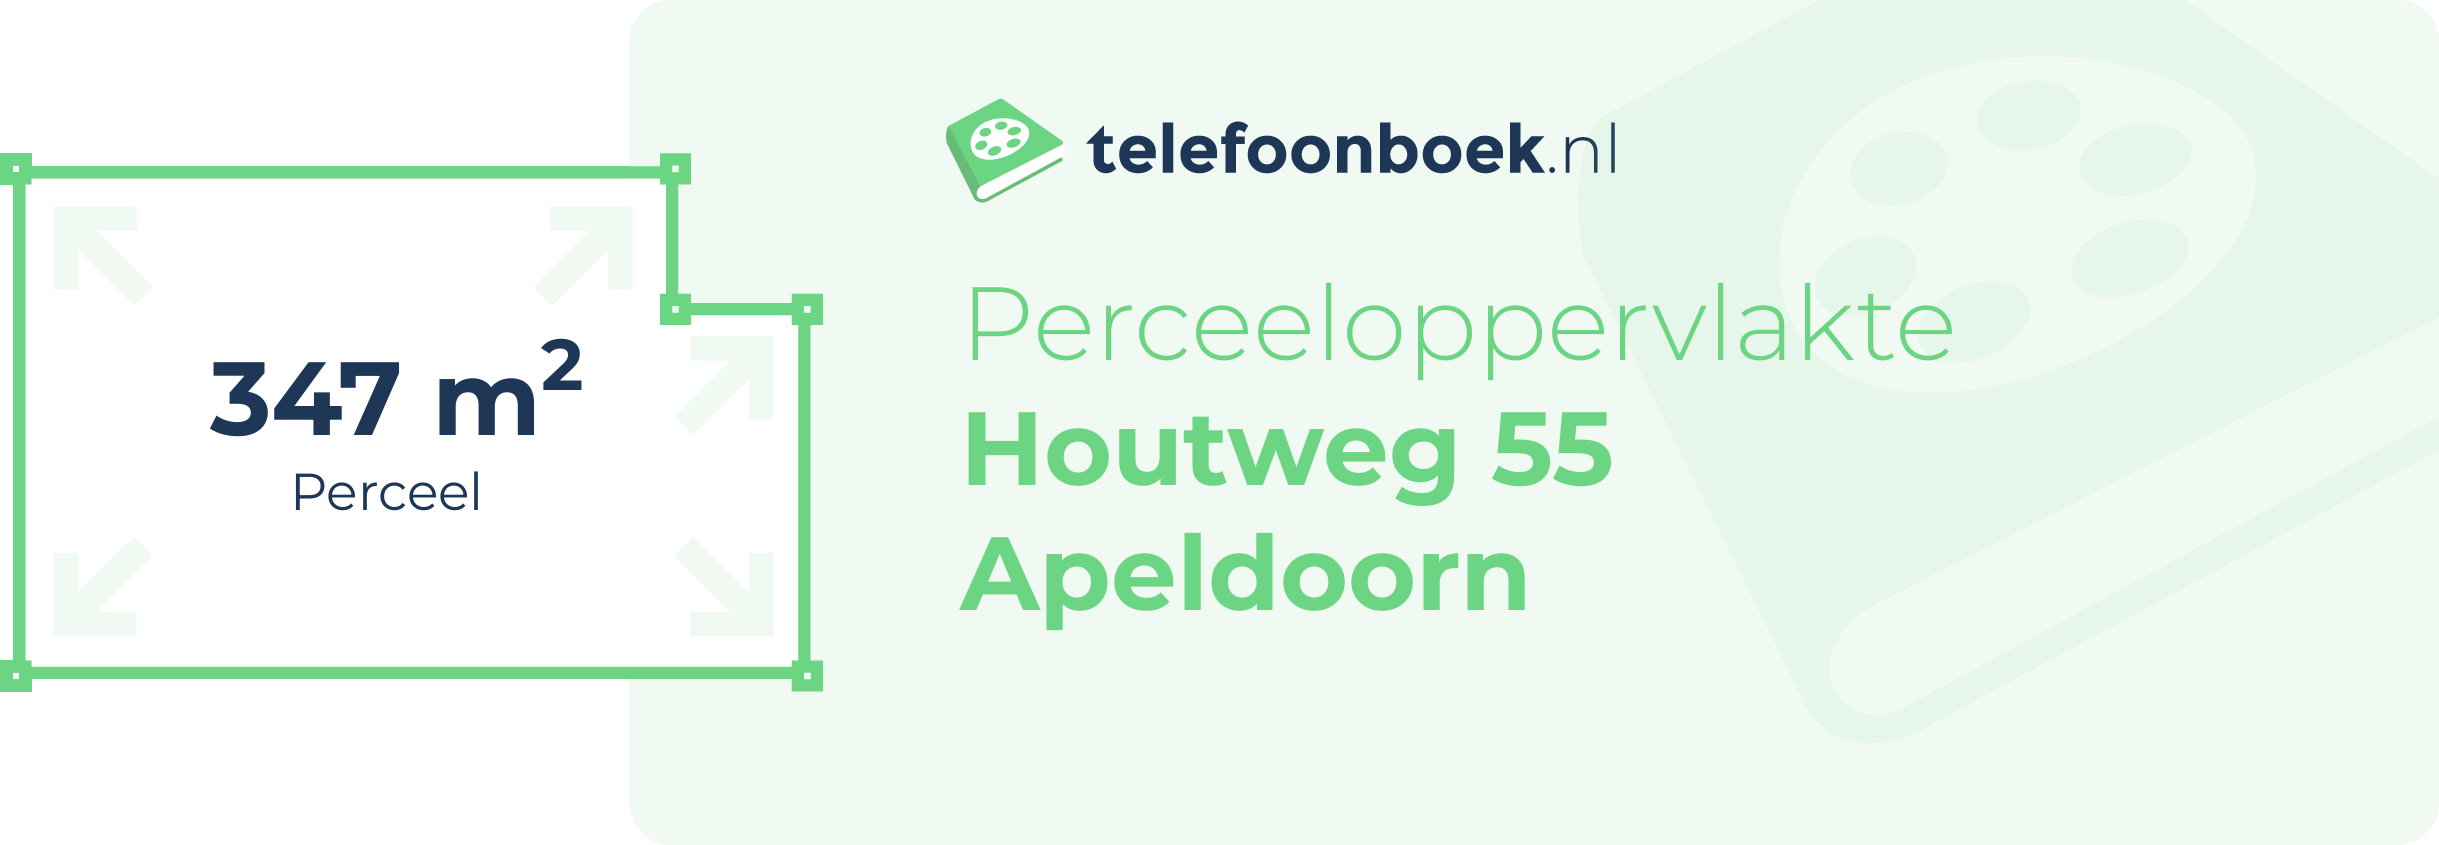 Perceeloppervlakte Houtweg 55 Apeldoorn